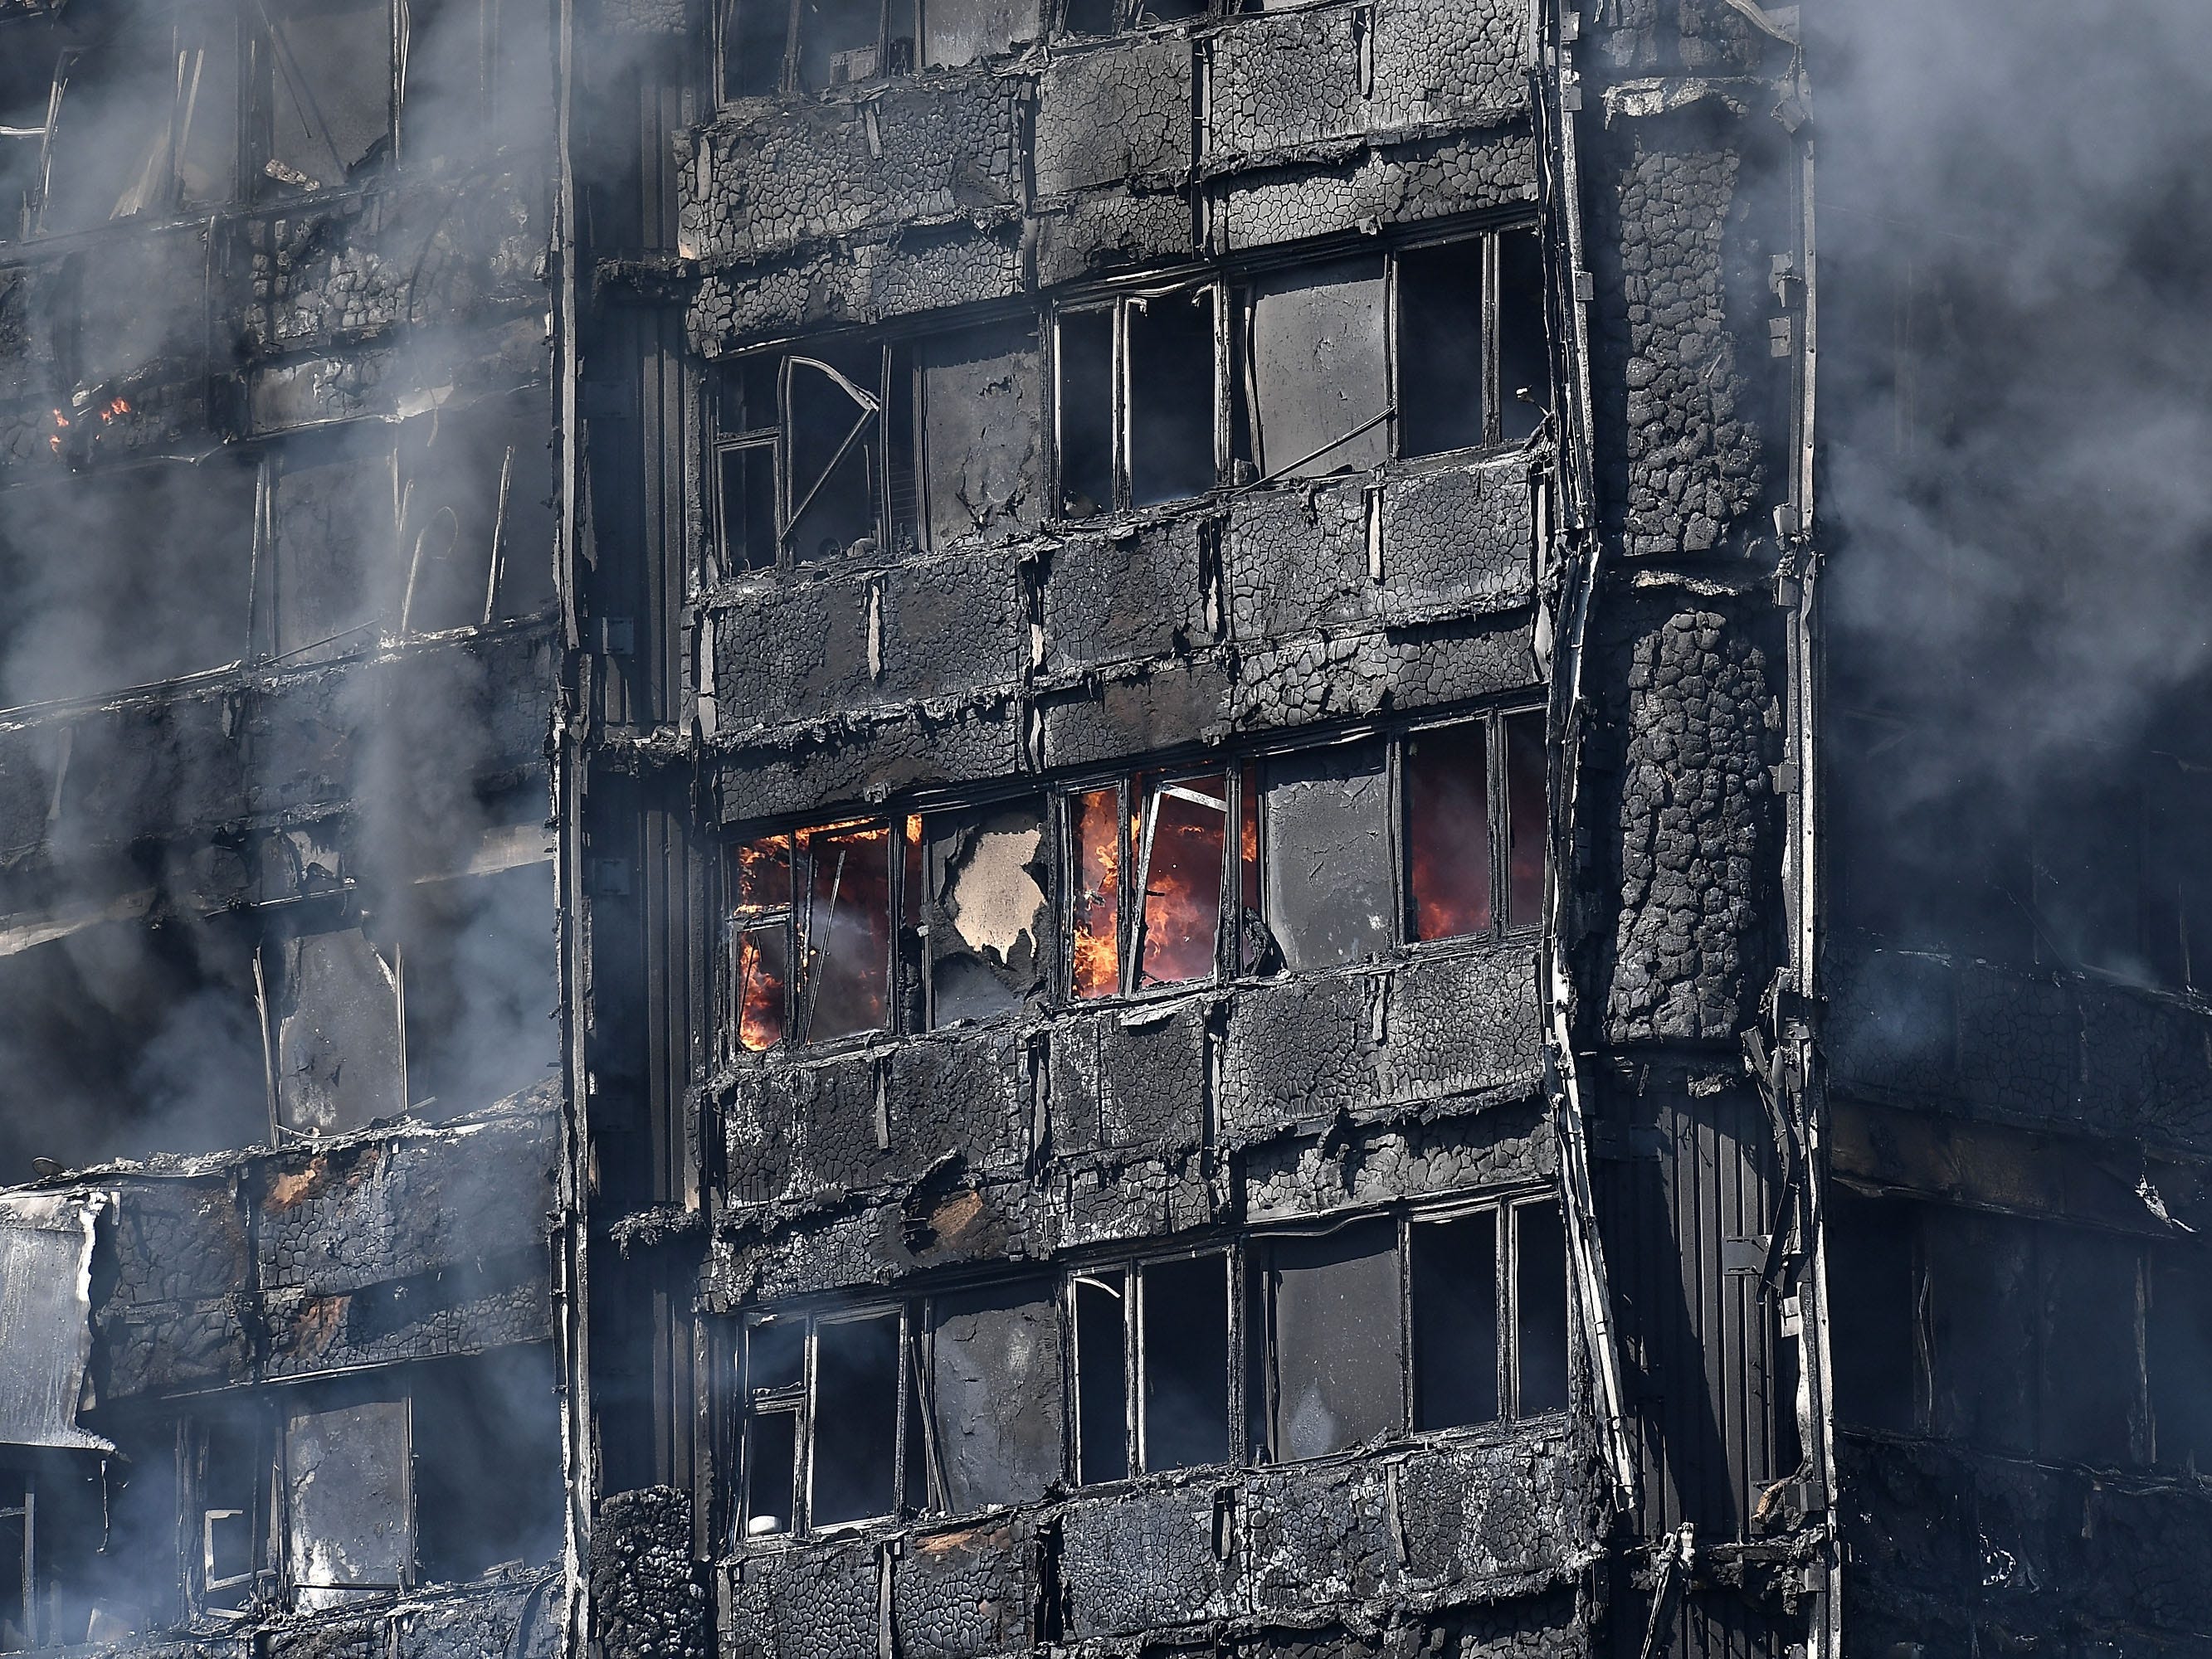 Rauch steigt aus dem brennenden 24-stöckigen Wohnblock Grenfell in der Latimer Road, West London am 14. Juni 2017 in London, England.